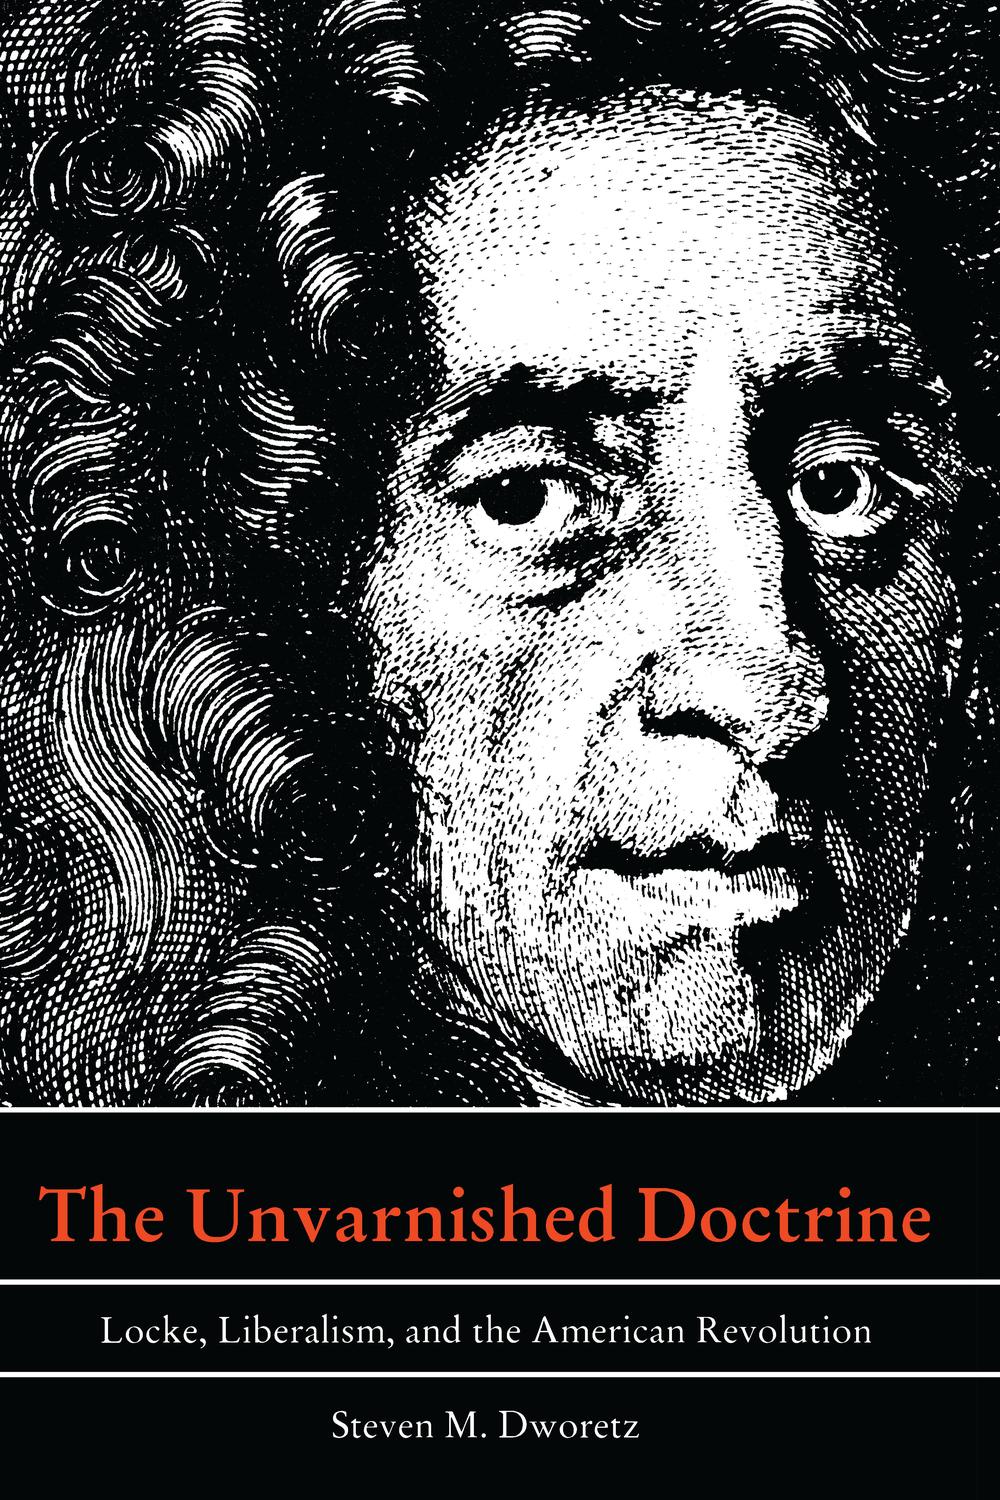 The Unvarnished Doctrine - Steven M. Dworetz